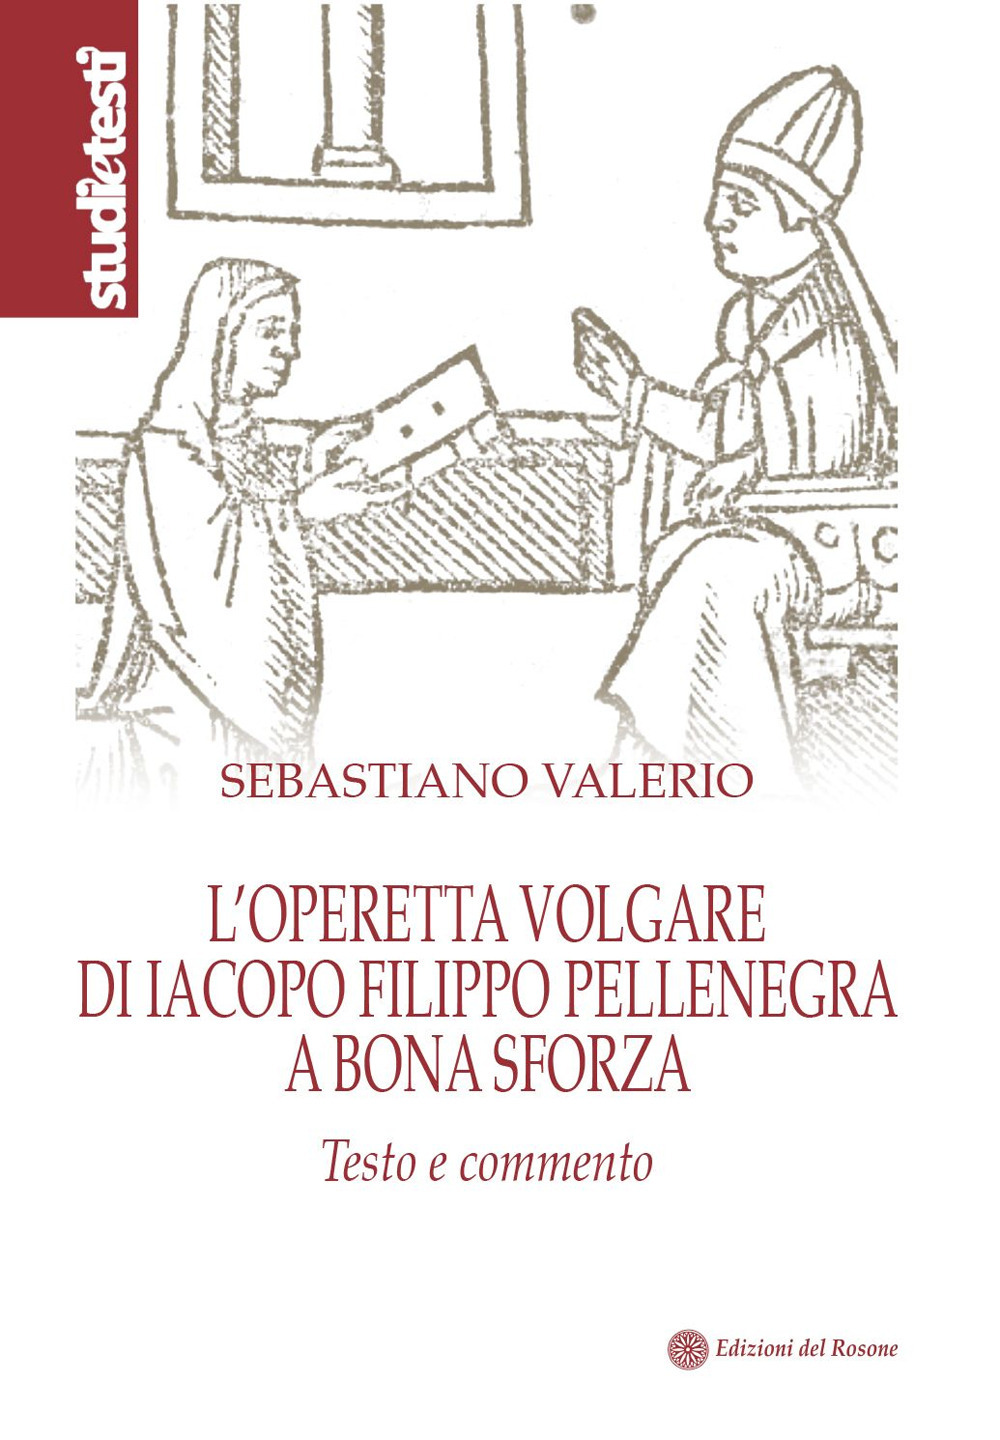 L'operetta volgare di Iacopo Filippo Pellenegra a Bona Sforza. Testo e commento